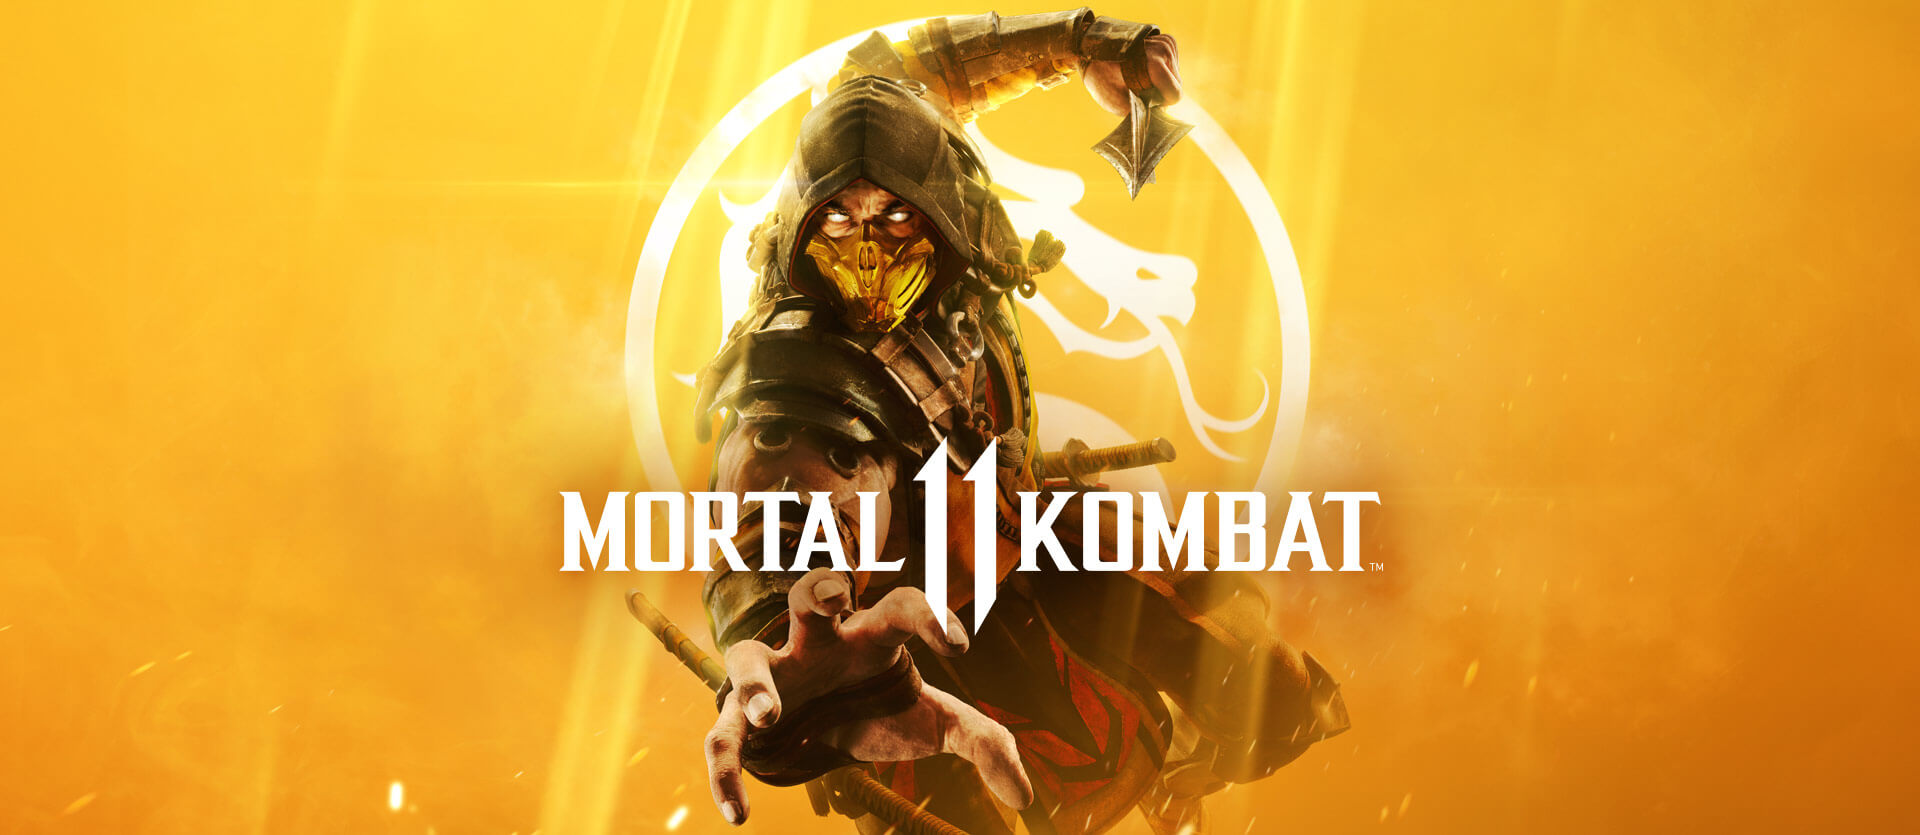 Mortal Kombat 11 PC Performance Analysis